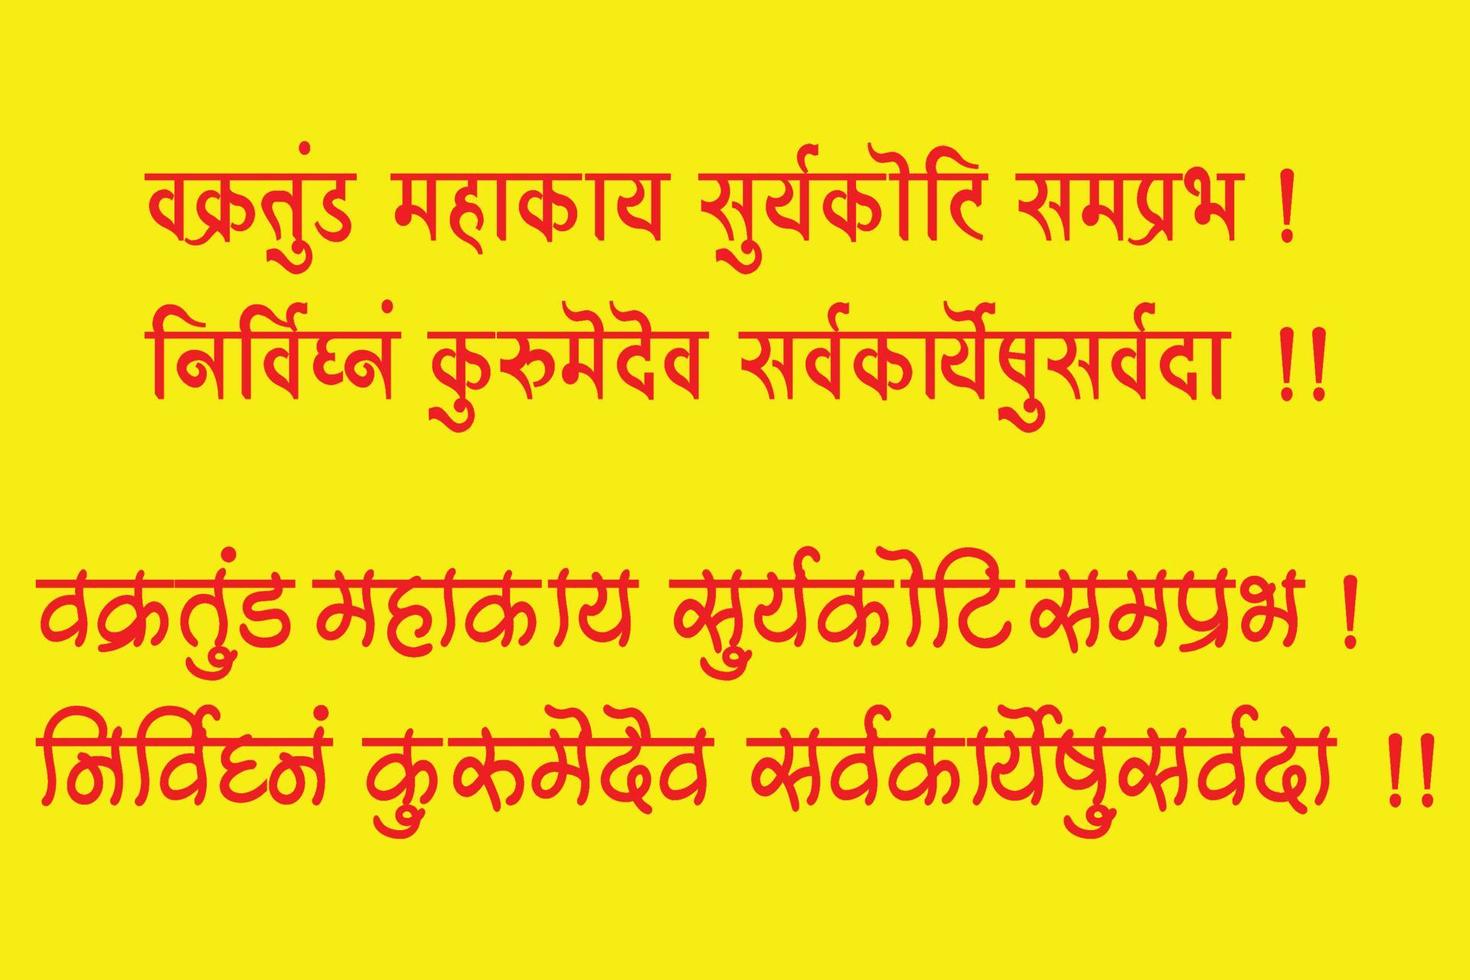 Lord Ganesha sanskrit shlok - vakratund mahakay suryakoti samprabh nirvighnam kurume dev sarvkareshu sarvada in hindi Calligraphy. vector